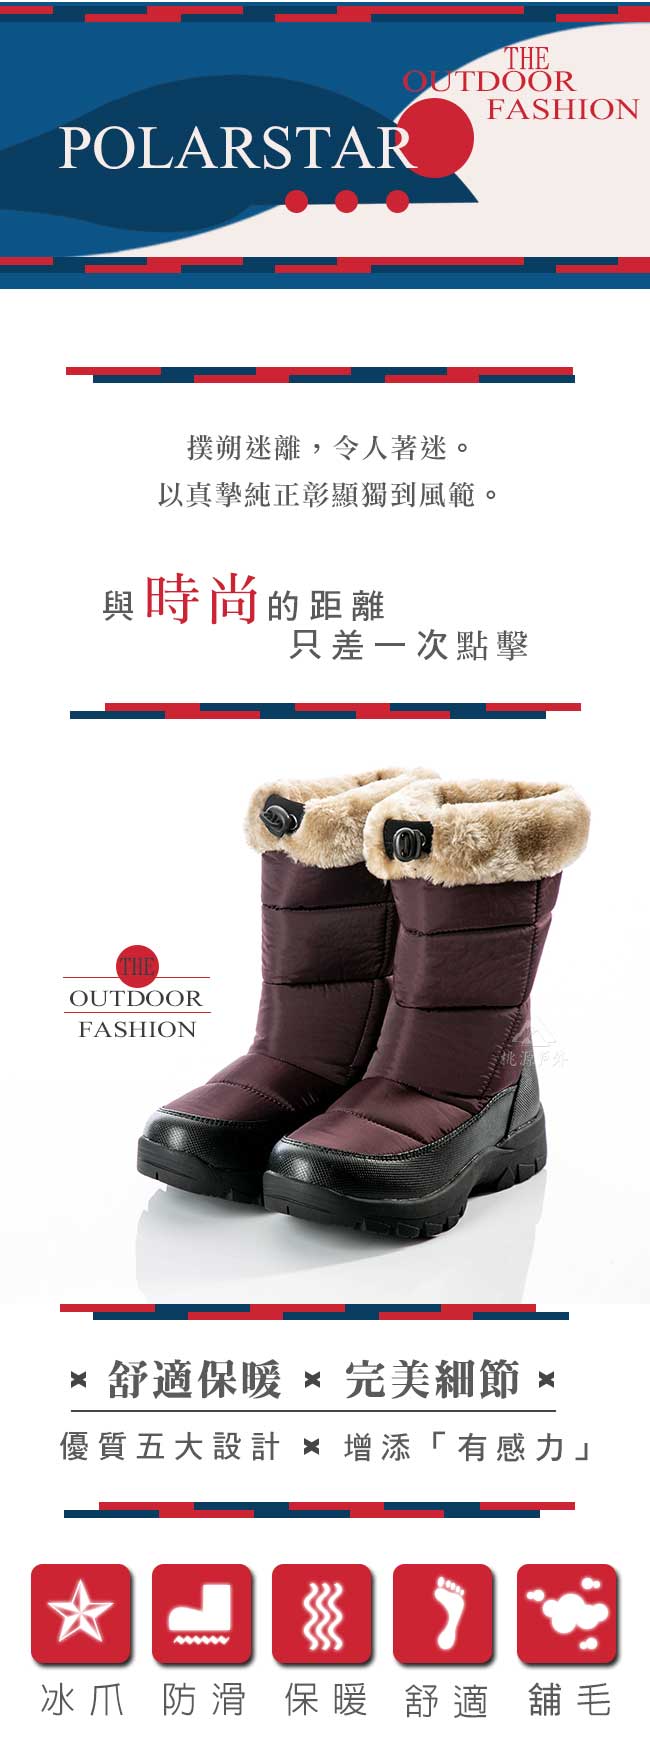 PolarStar 女保暖雪鞋『褐紫』P18628 冰爪 / 內厚鋪毛 /防滑鞋底